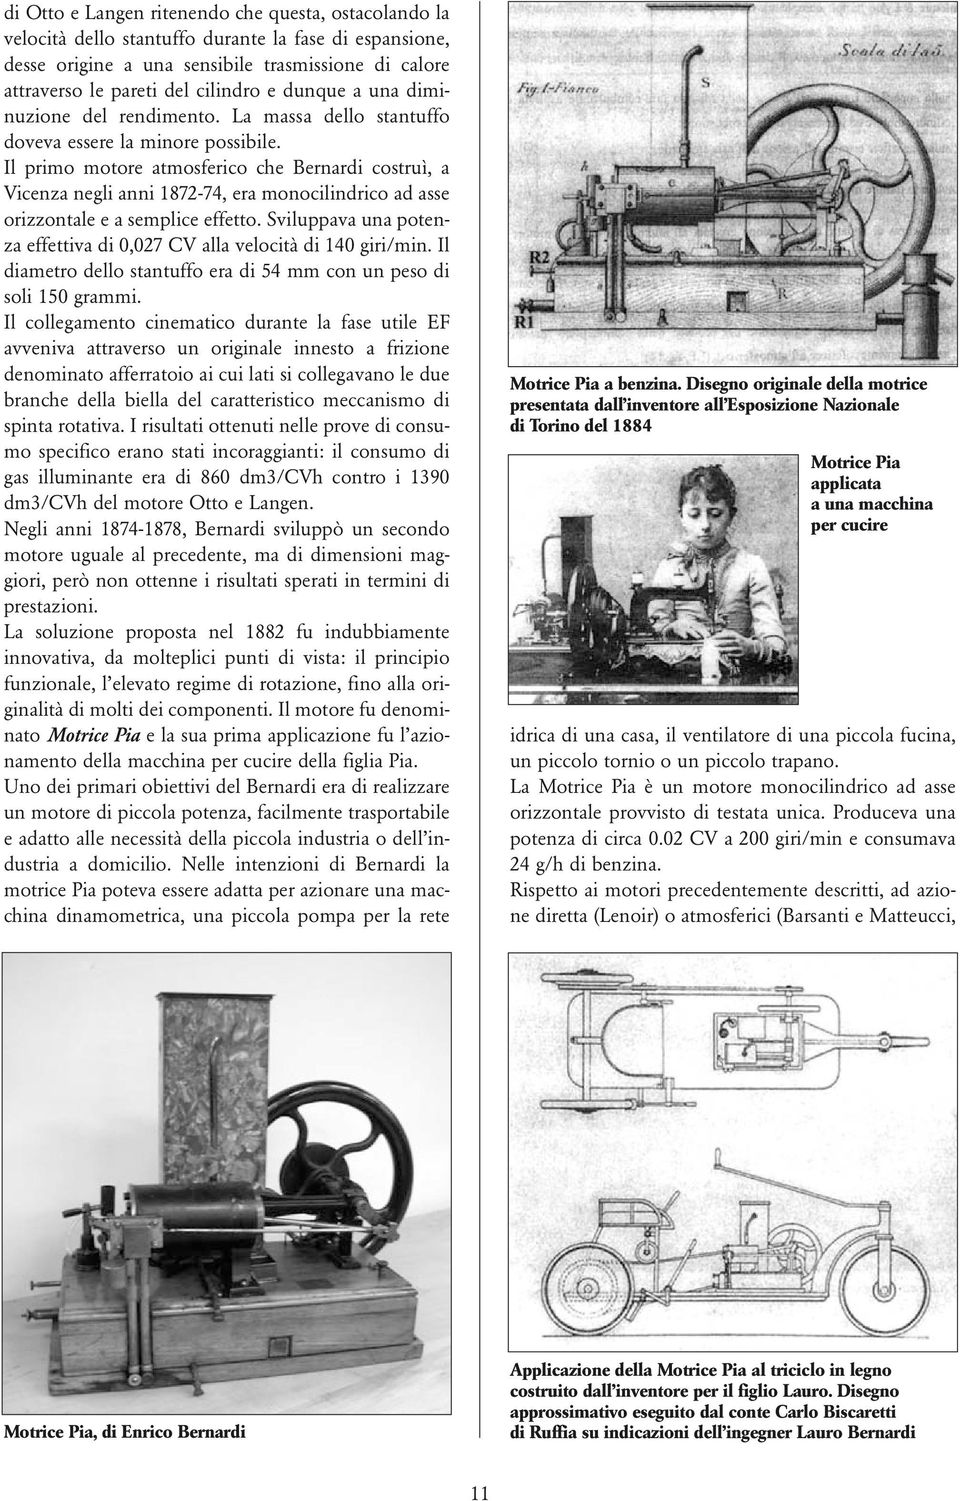 Il primo motore atmosferico che Bernardi costruì, a Vicenza negli anni 1872-74, era monocilindrico ad asse orizzontale e a semplice effetto.